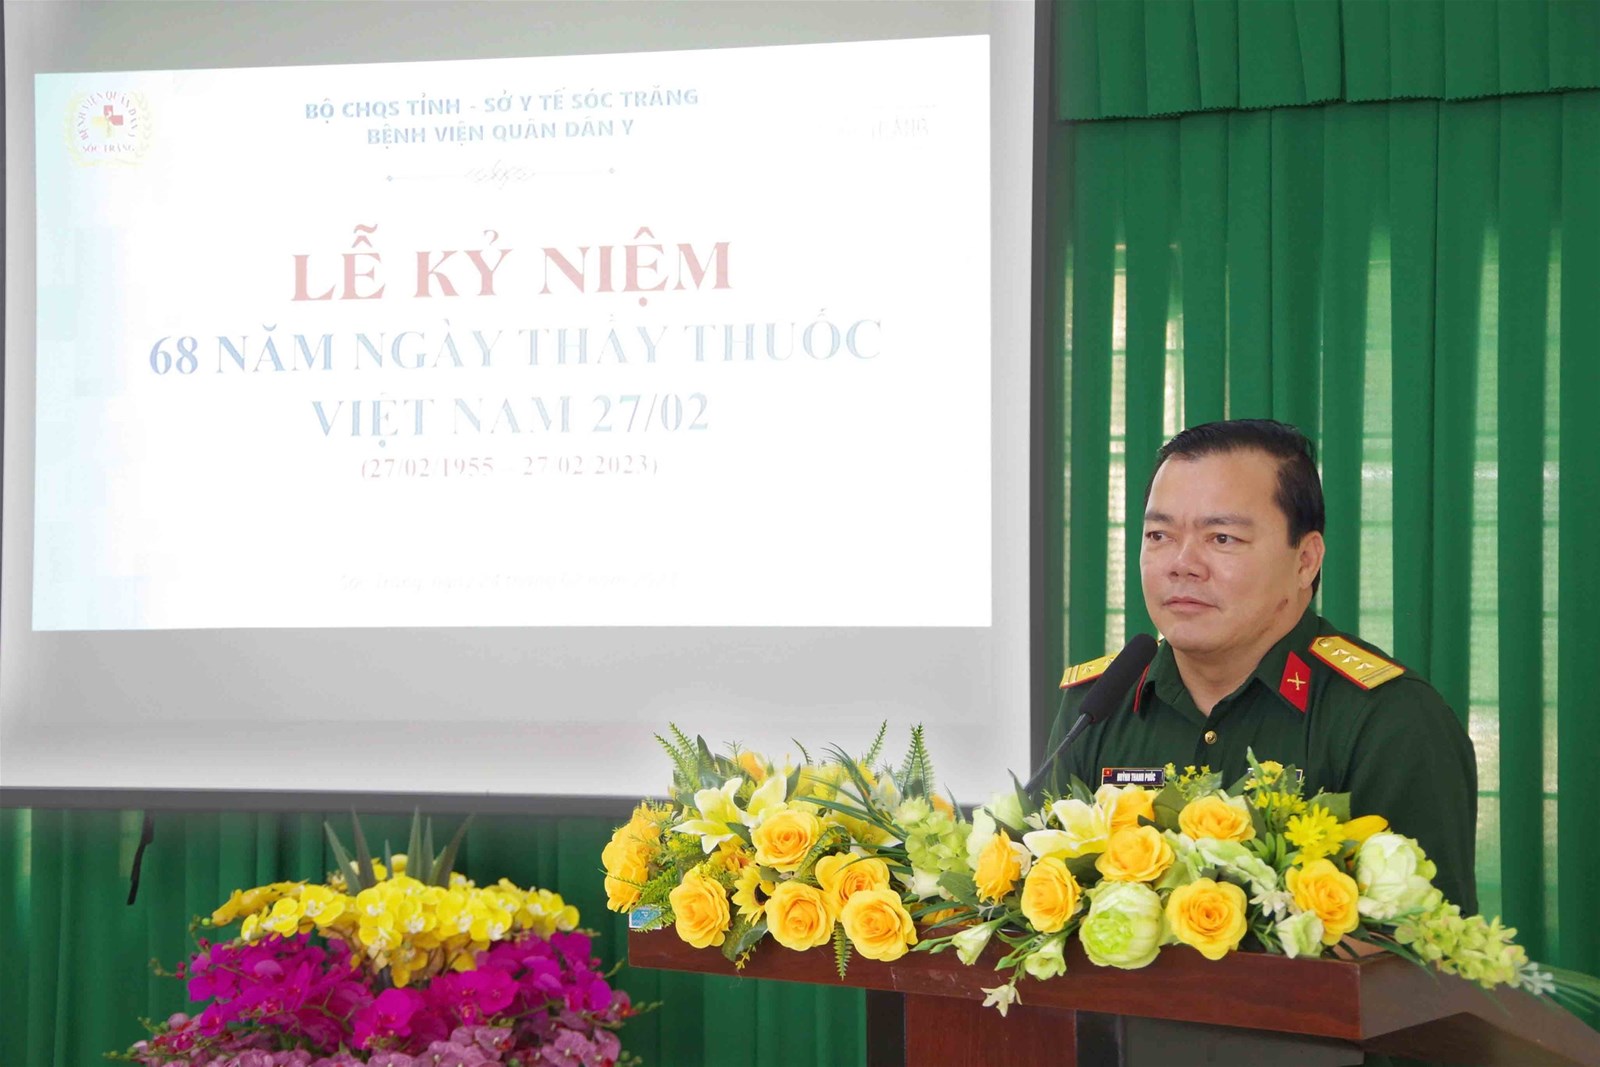 Bệnh viện Quân Dân y Sóc Trăng Họp mặt kỷ niệm 68 năm ngày Thầy thuốc Việt Nam